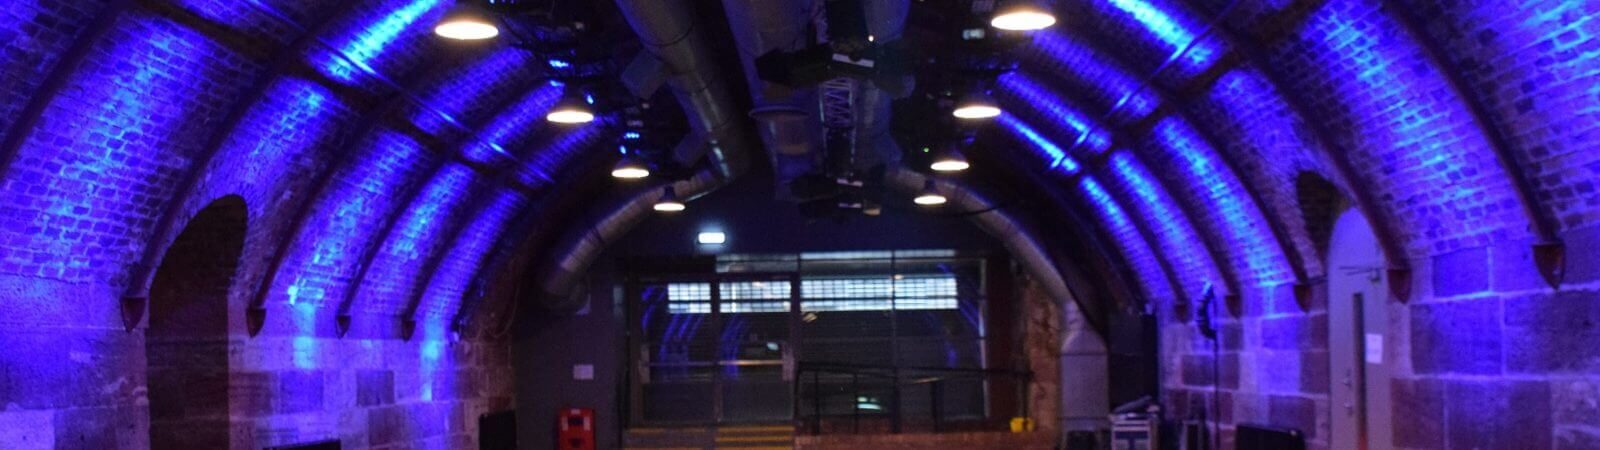 Underground platform with blue lights